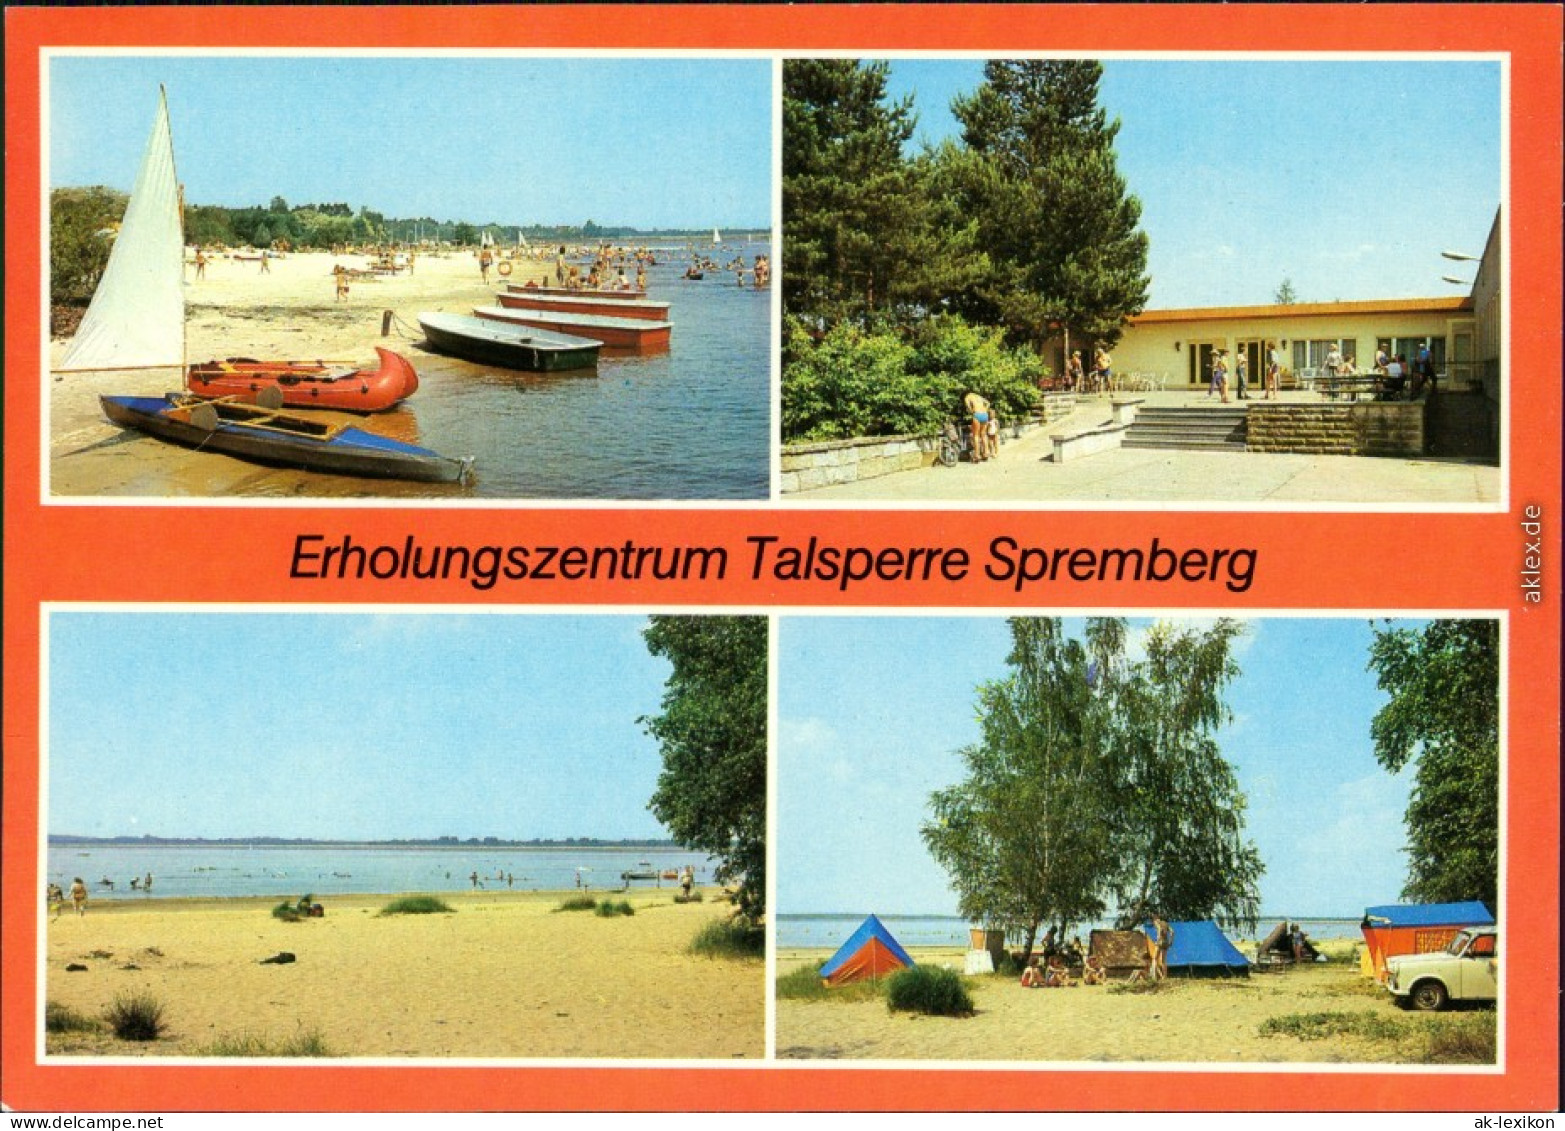 Spremberg Grodk Talsperre - See Mit Botten, Gaststätte, Strand, Zeltplatz 1984 - Spremberg